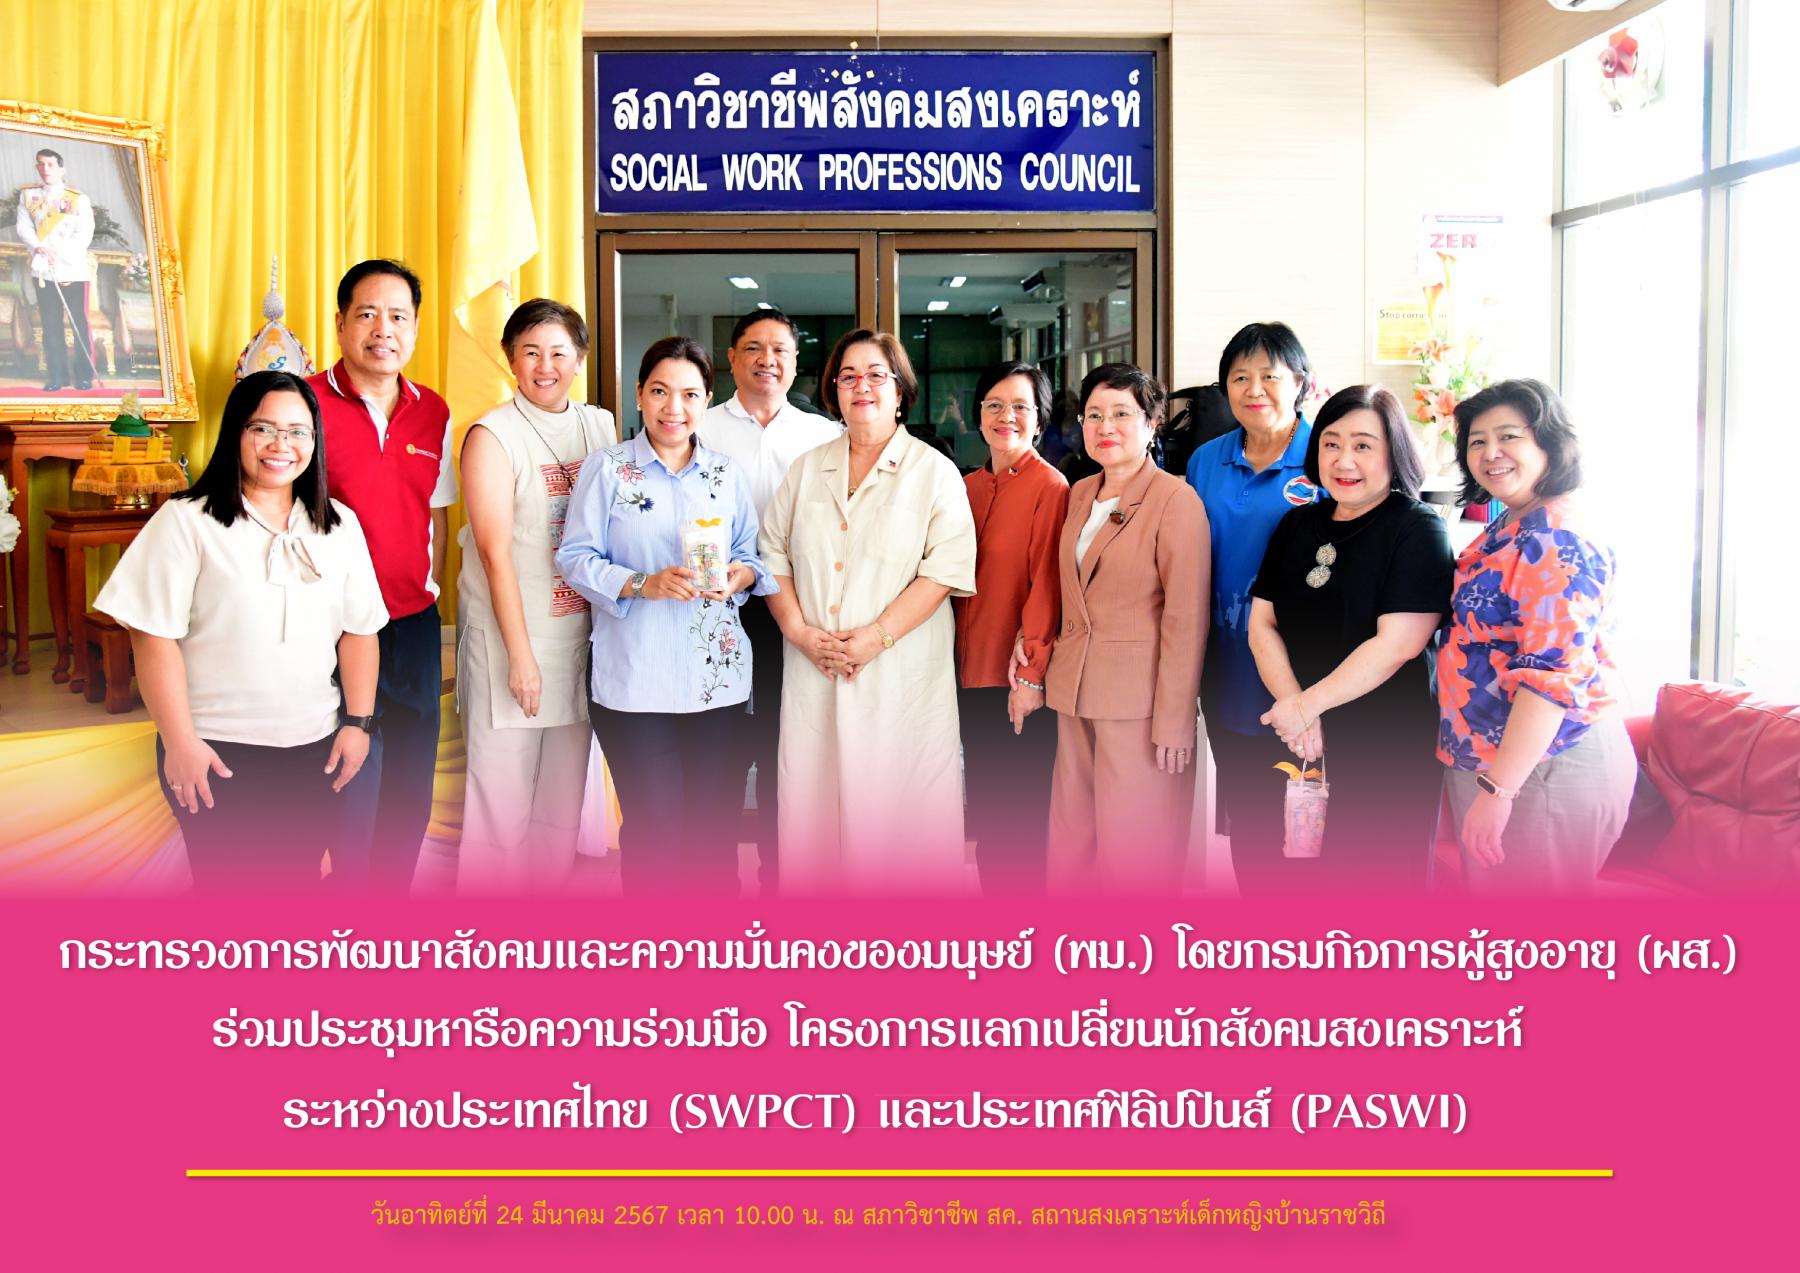 กระทรวงการพัฒนาสังคมและความมั่นคงของมนุษย์ (พม.) โดยกรมกิจการผู้สูงอายุ (ผส.) ร่วมประชุมหารือความร่วมมือ โครงการแลกเปลี่ยนนักสังคมสงเคราะห์ ระหว่างประเทศไทย (SWPCT) และประเทศฟิลิปปินส์ (PASWI) 